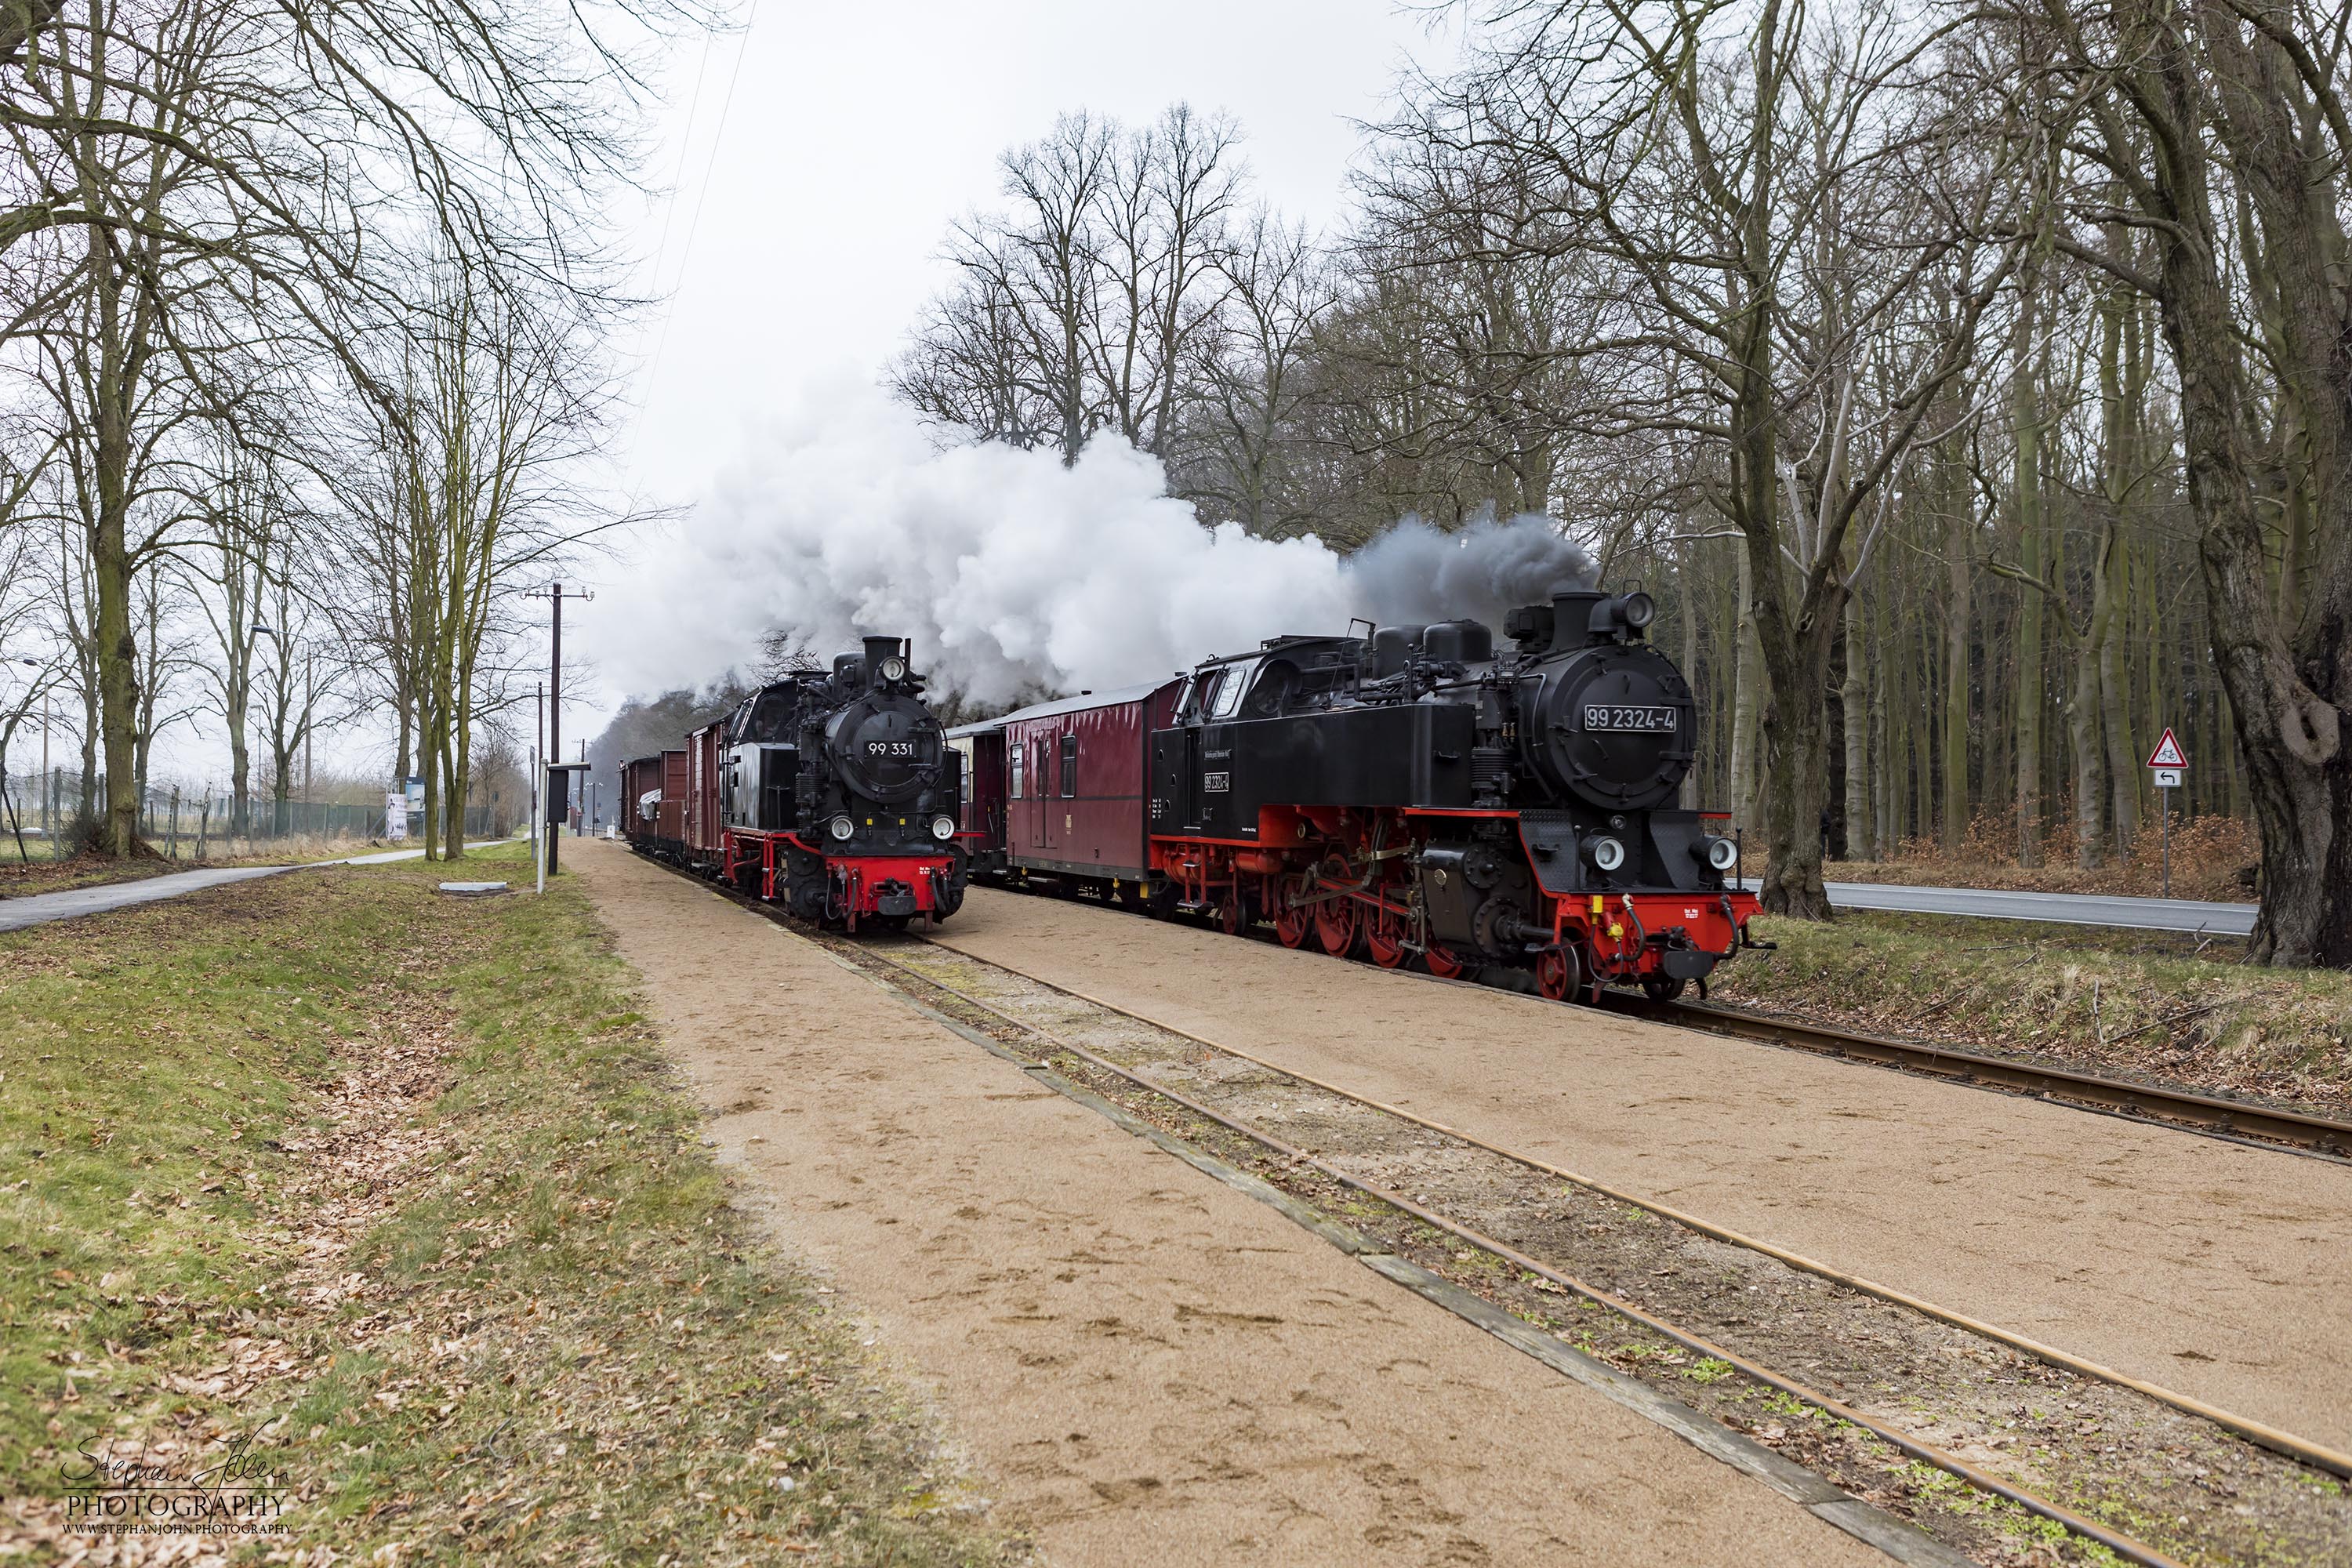 Lok 99 331 mit einem Güterzug der Epoche III im Bahnhof Rennbahn wird durch einen Personenzug mit der Lok 99 2324-4 überholt. Die Zugbildung des Güterzuges entspricht der Zeit in den sechziger Jahren, als beim Molli noch Güterzugverkehr durchgeführt wurde.